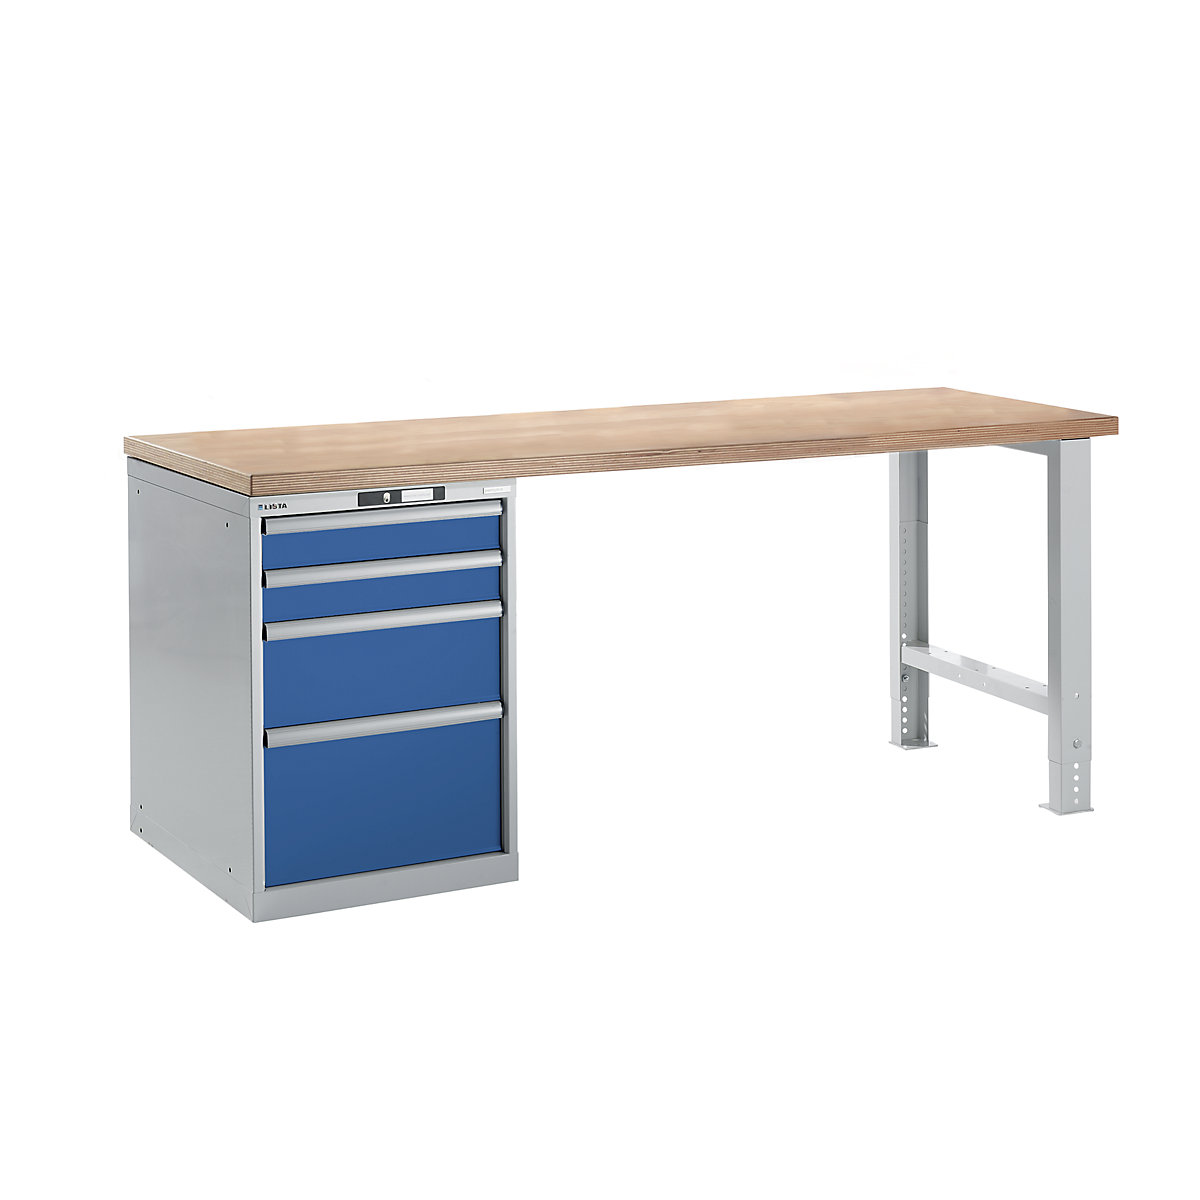 Radna klupa kao modularni sustav – LISTA, visina 840 mm, ormar za postavljanje ispod stola, 4 ladice, u encijan plavoj boji, širina stola 2000 mm-12